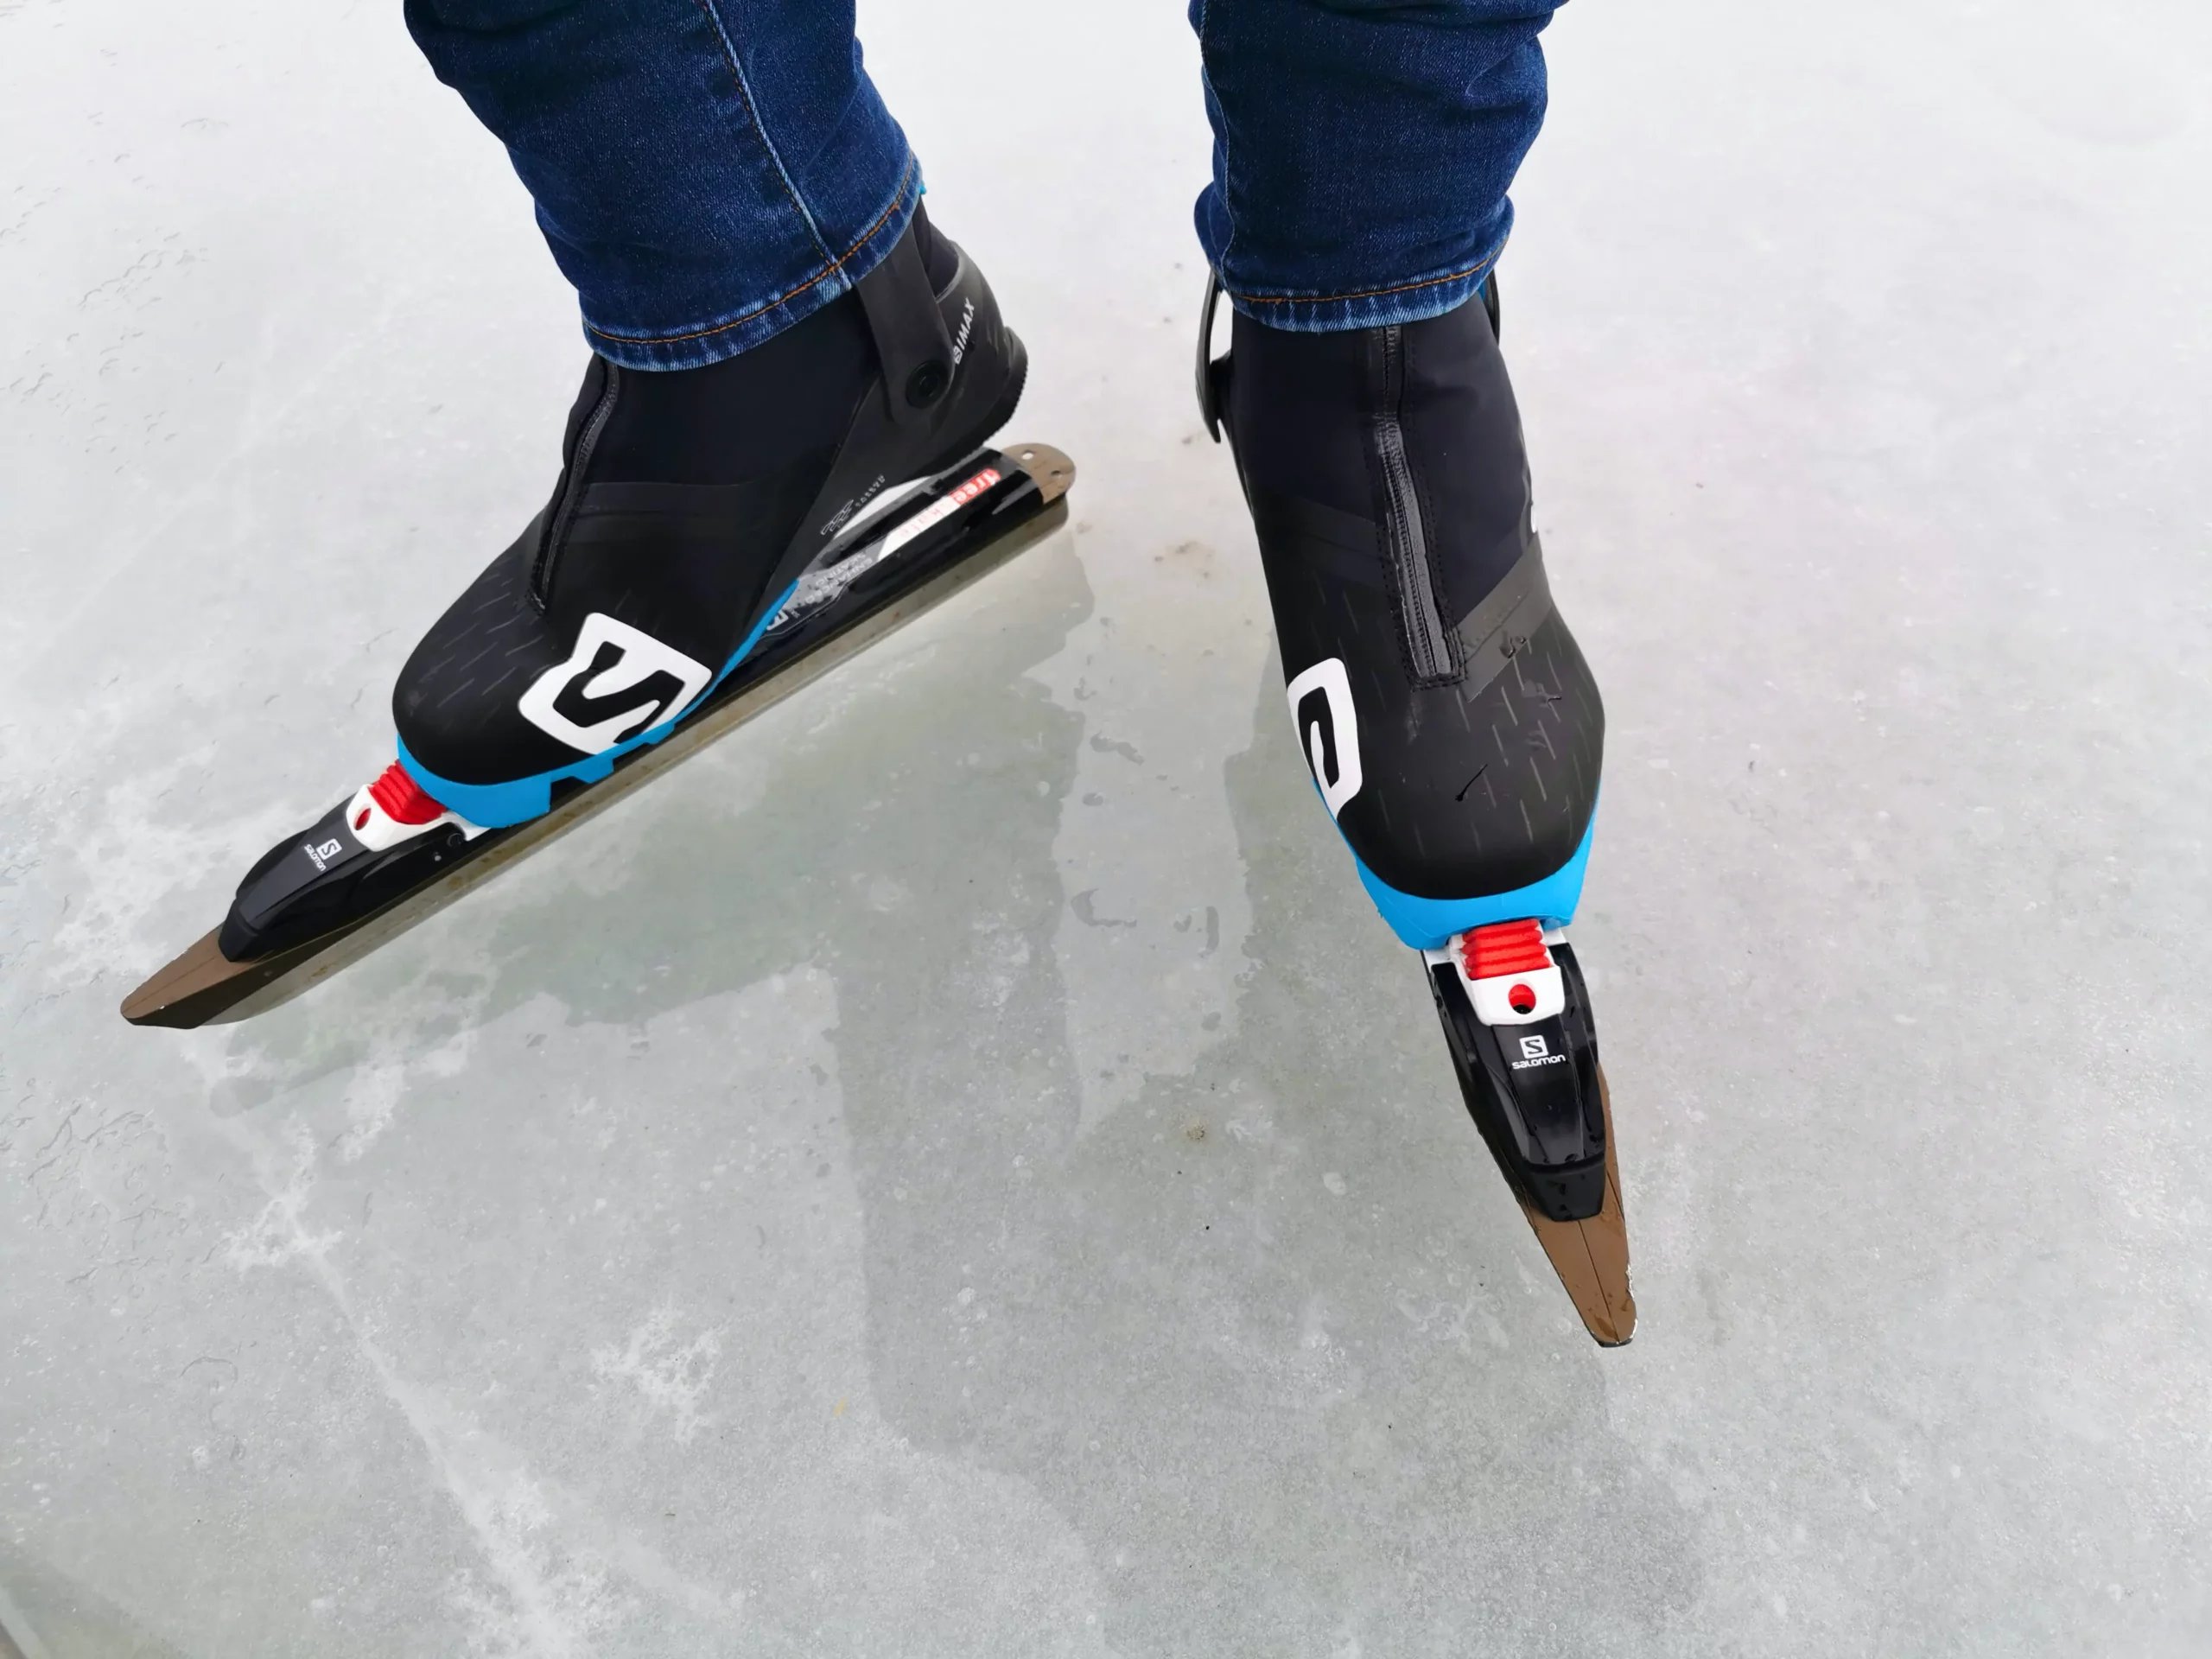 Eisschnelllauf Wintersport am Weißensee